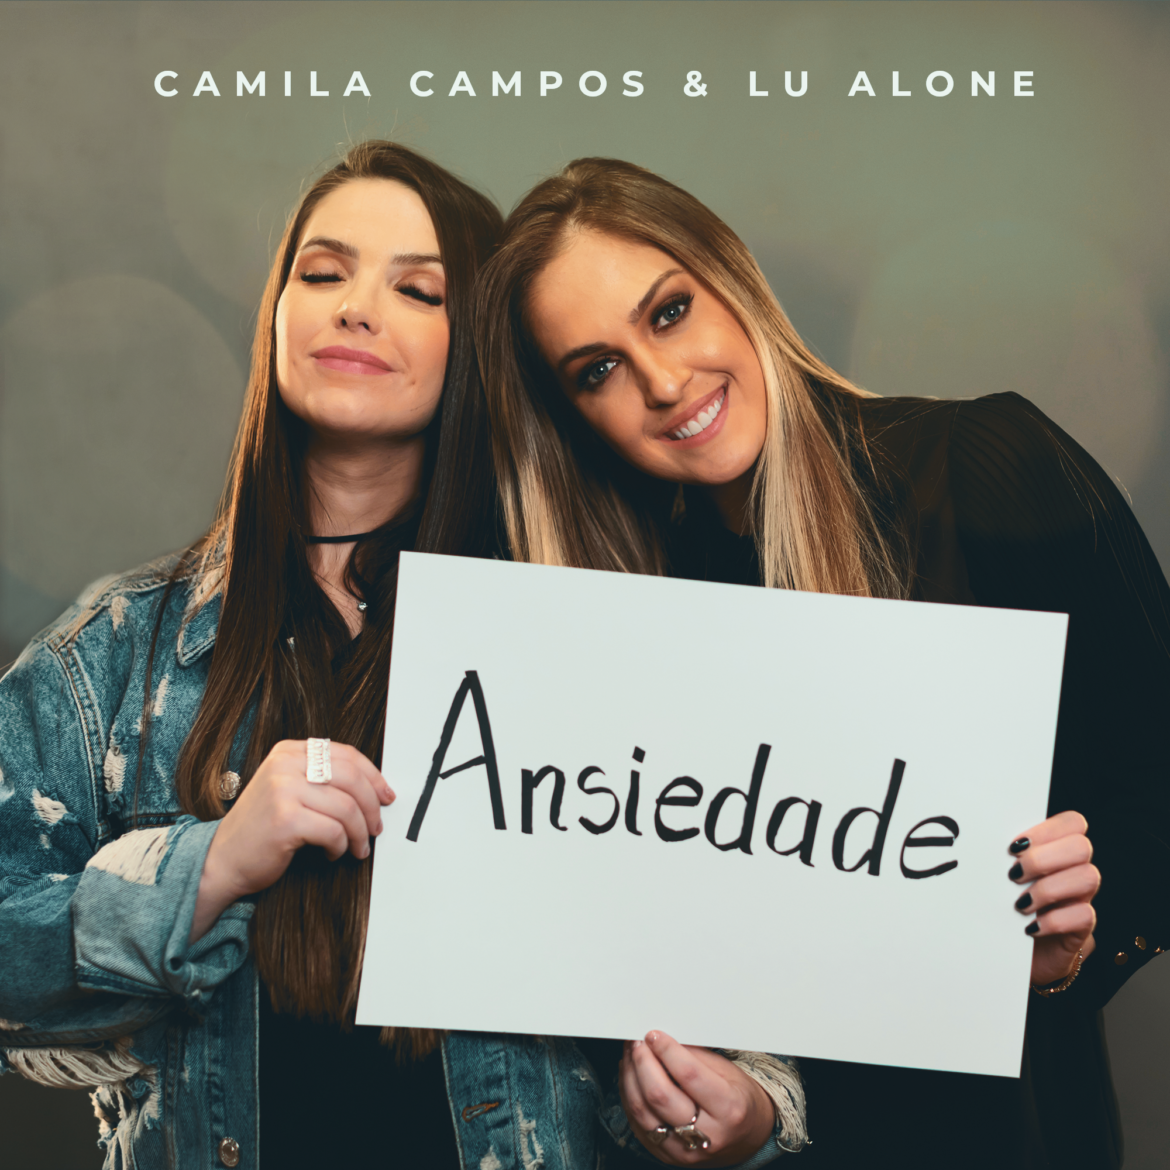 A psicóloga e cantora Camila Campos lança canção autoral com o tema “Ansiedade”